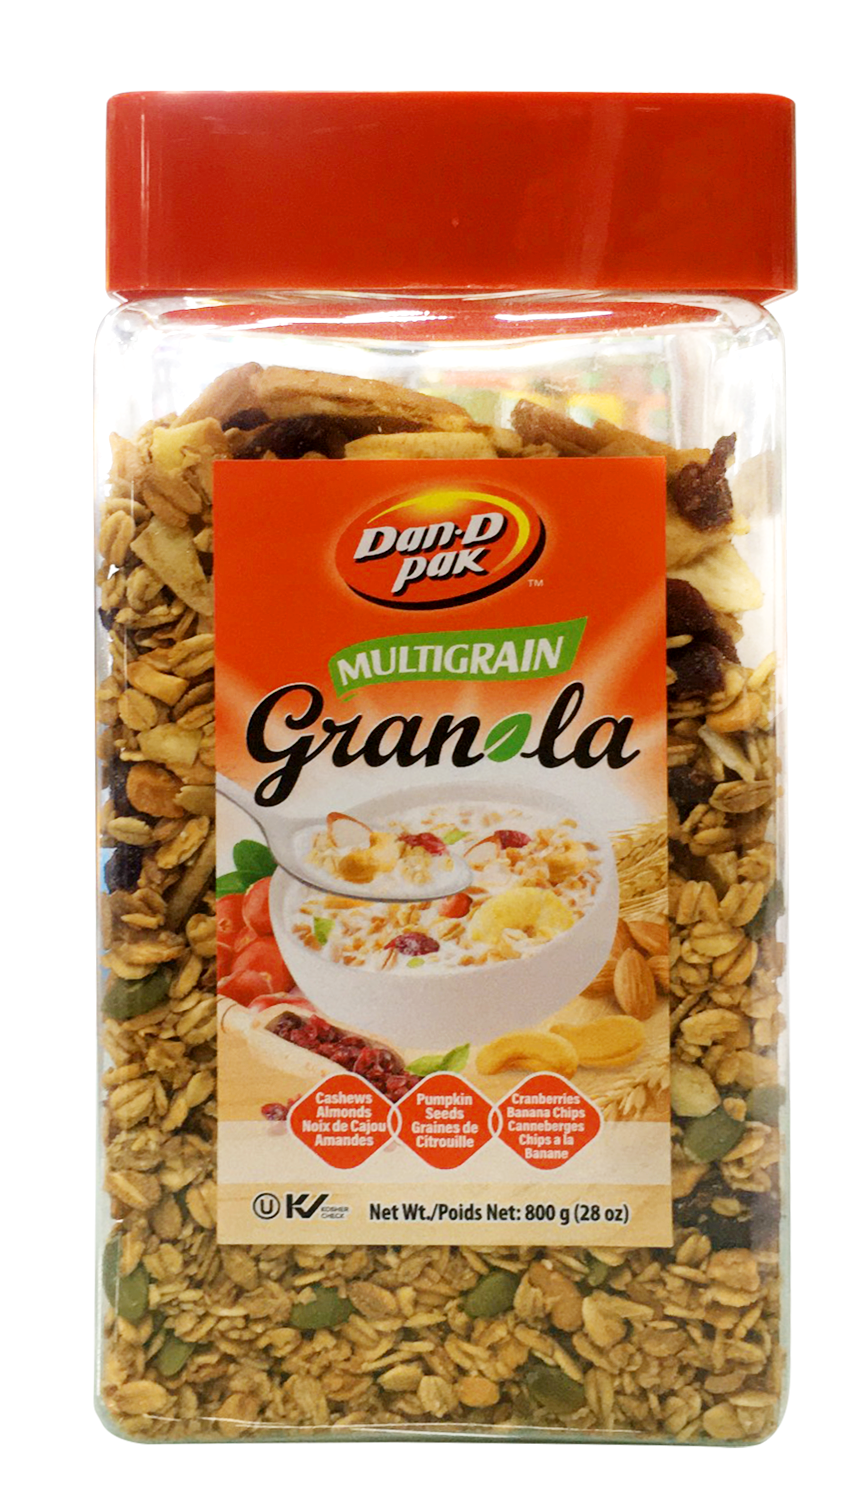 Ngũ cốc Granola Multigain dinh dưỡng buổi sáng, cung cấp năng lượng 800g Dan D Pak